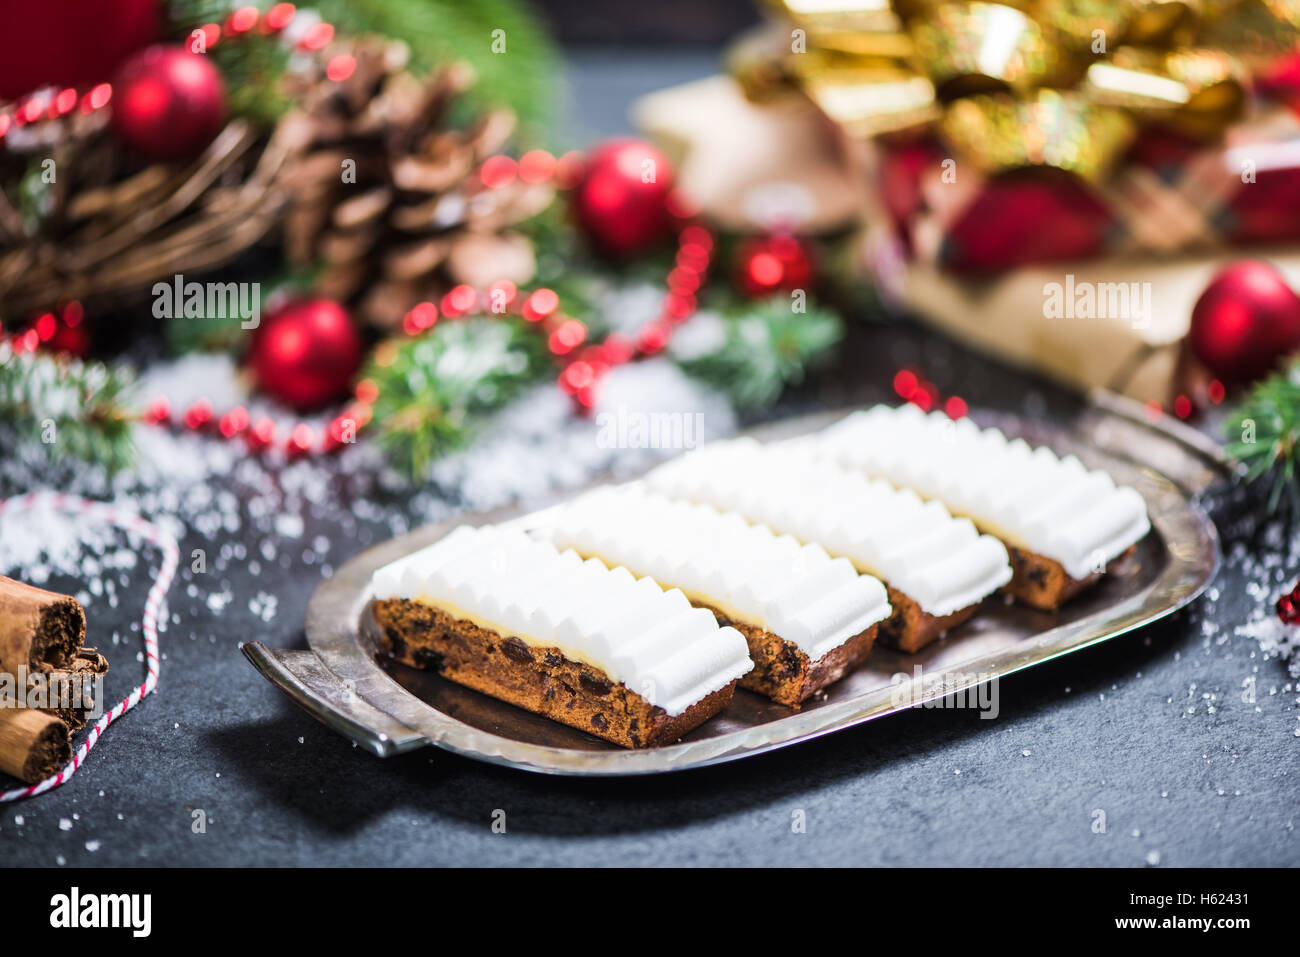 Natale ricco di frutta a fette di torta su wintage serve silver plater Foto Stock